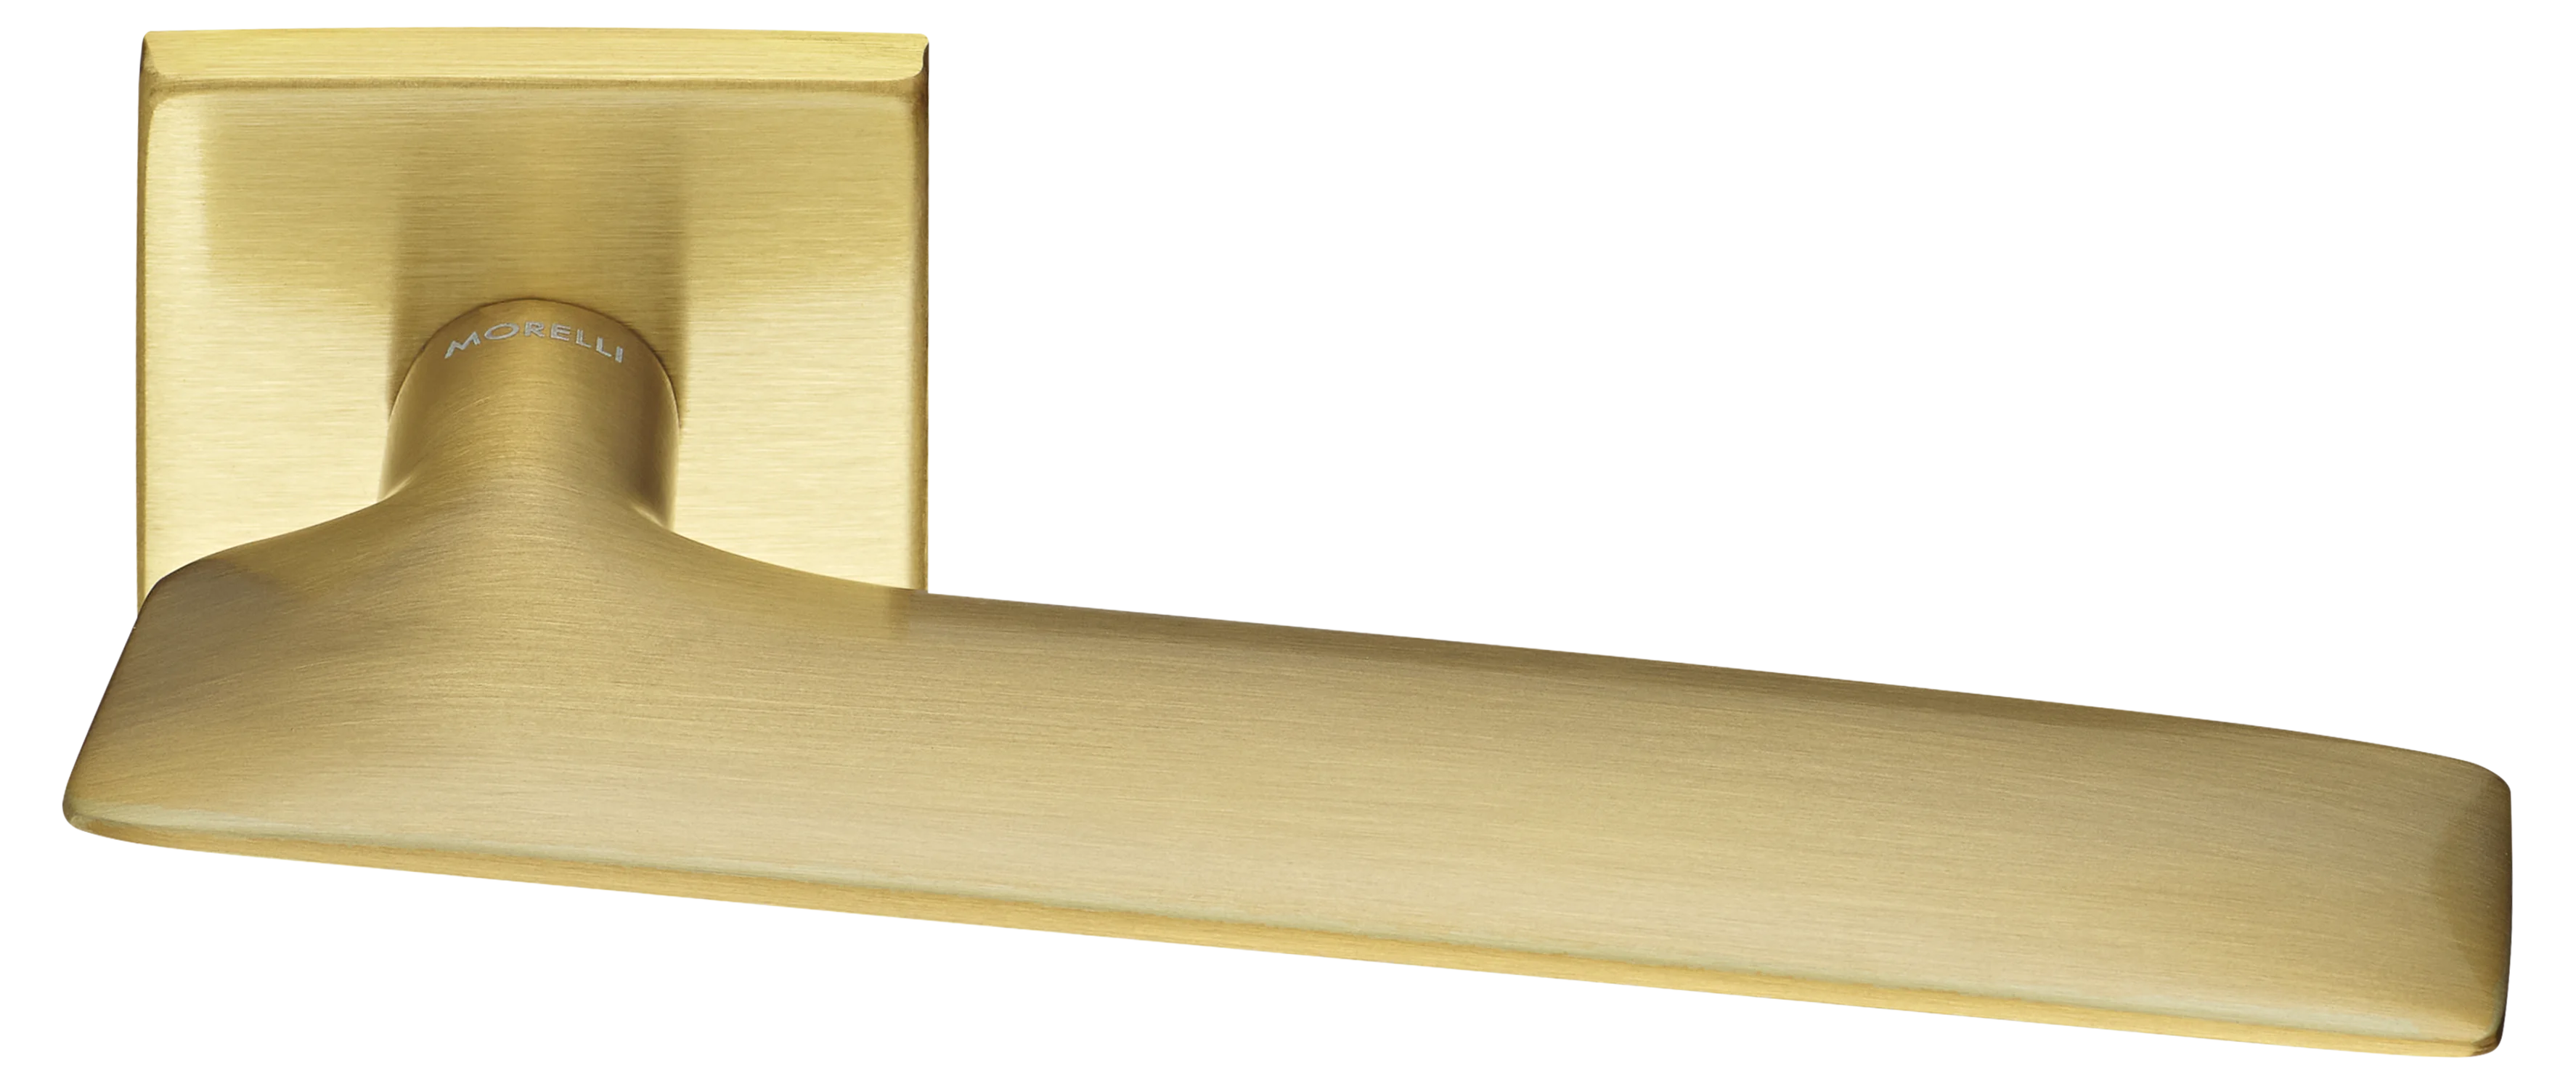 GALACTIC S5 OSA, ручка дверная, цвет -  матовое золото фото купить Минск